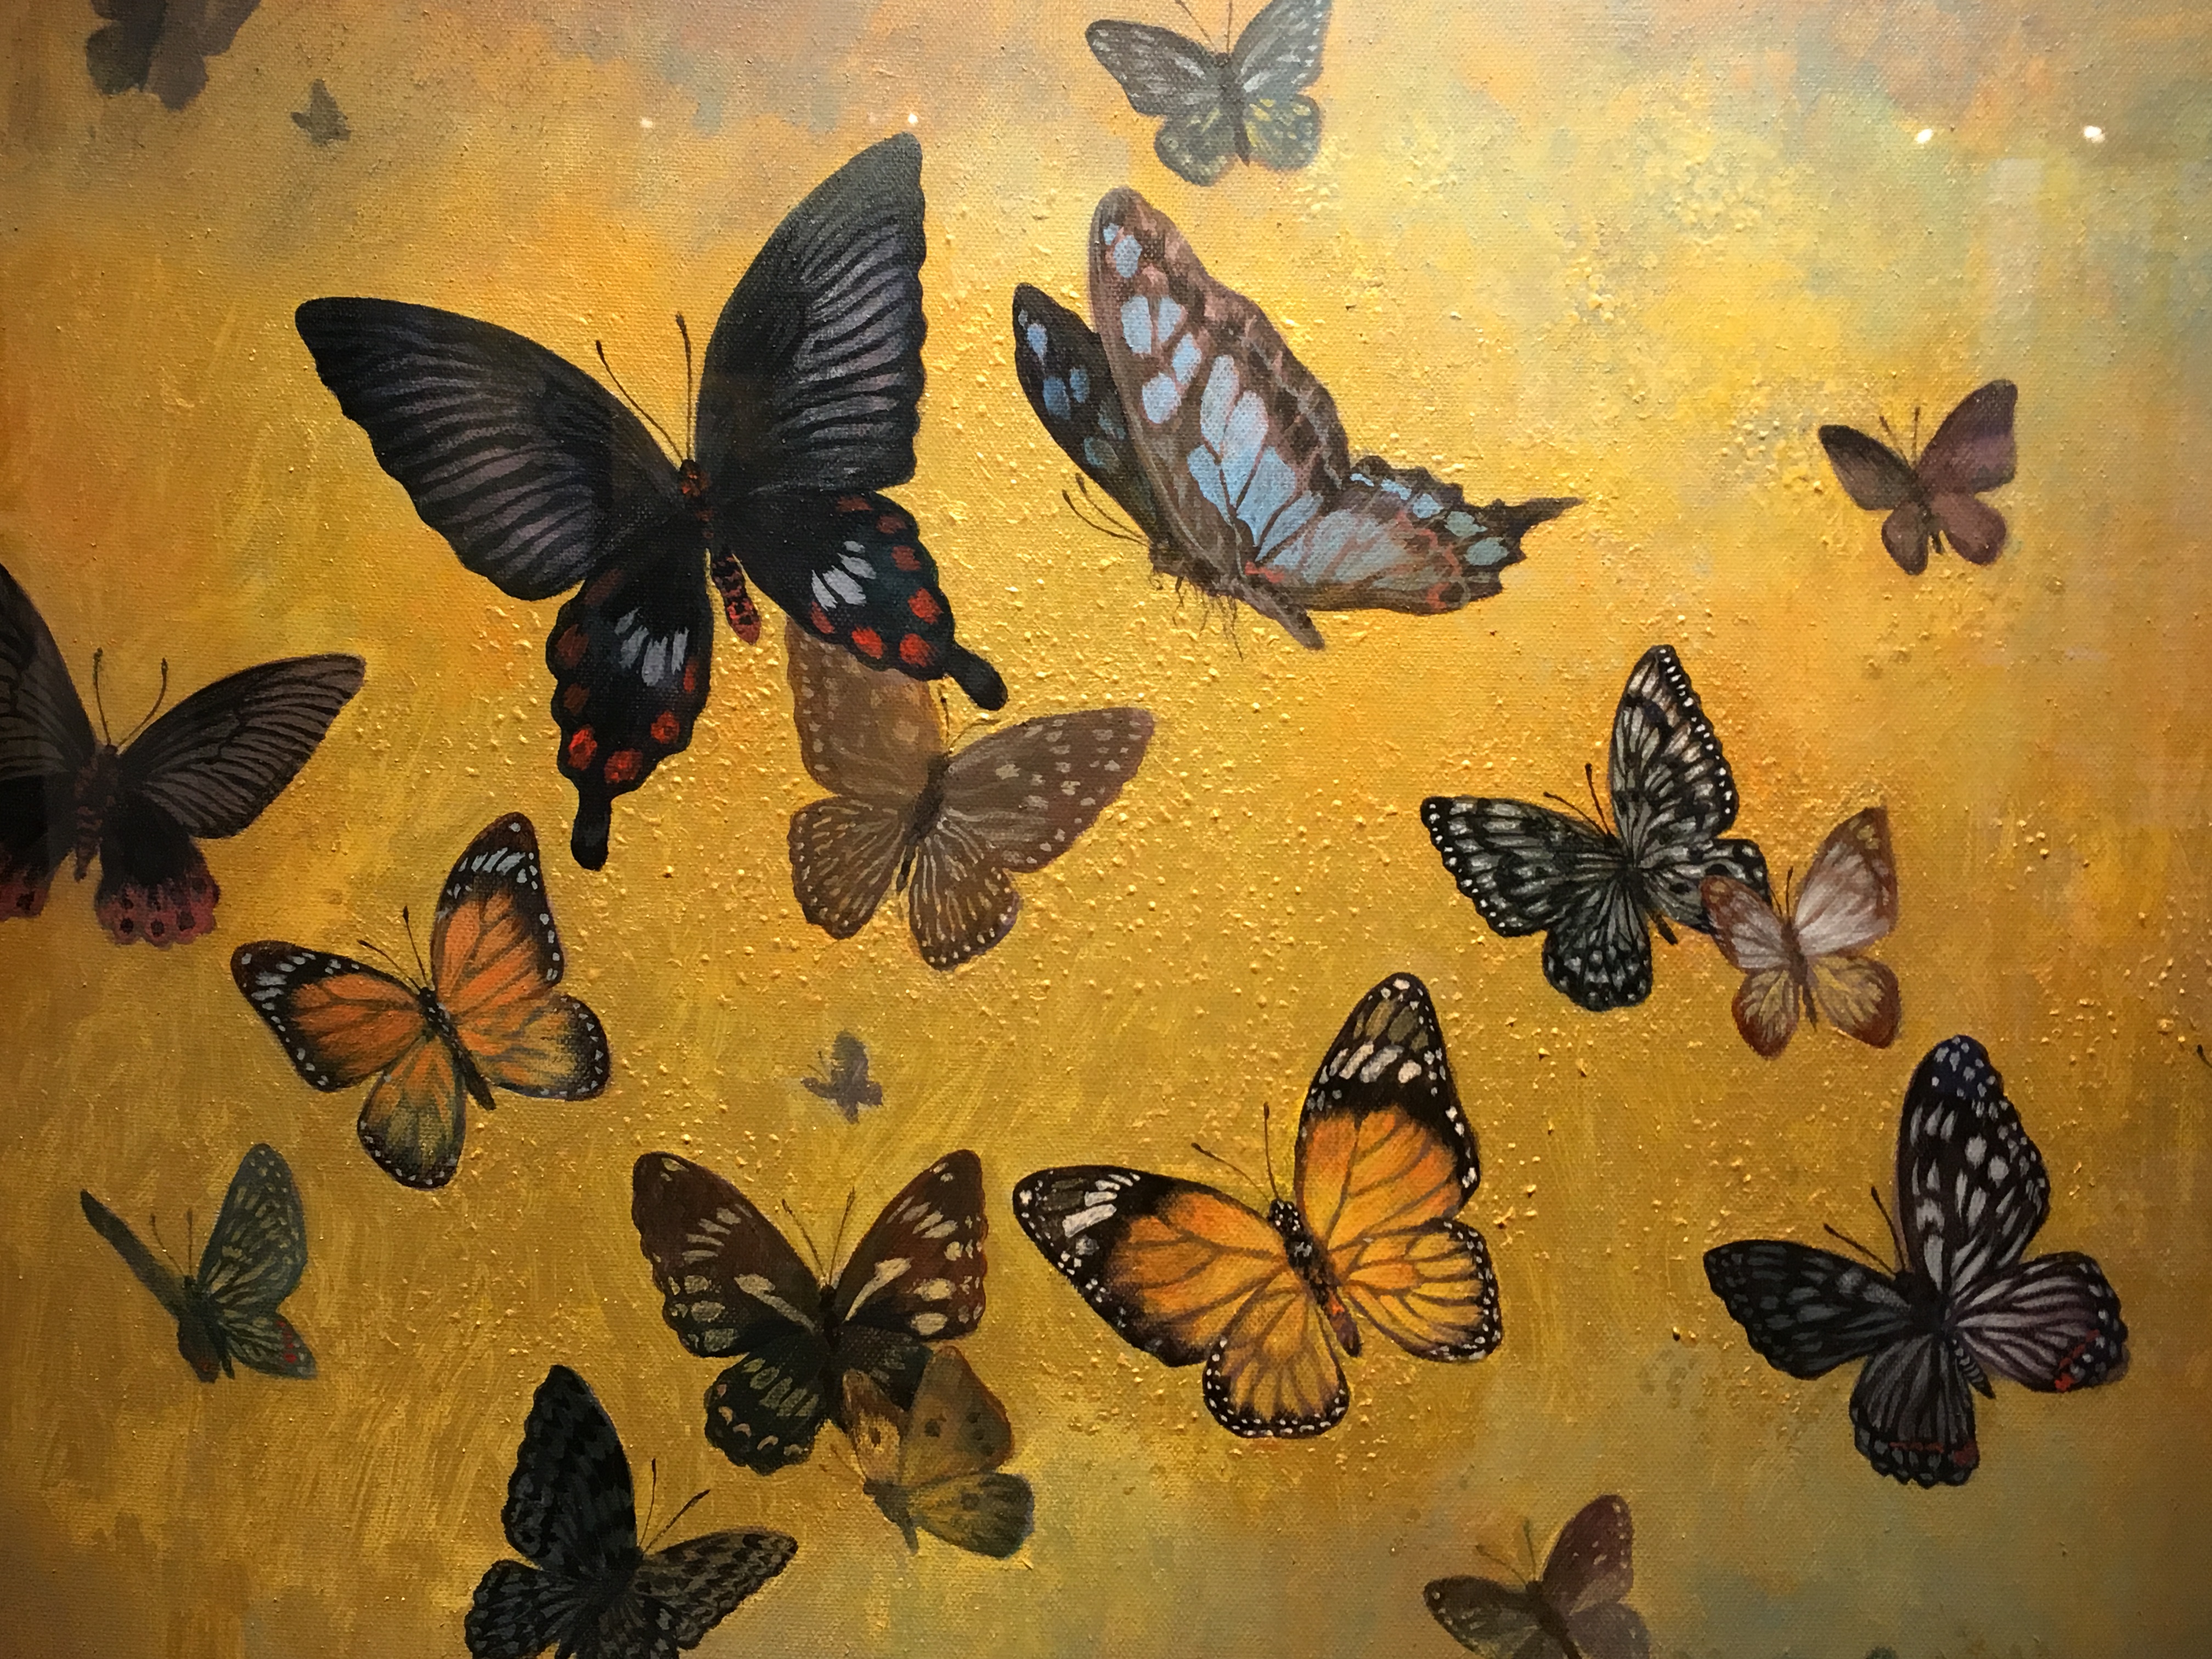 劉子平，《蝴蝶谷》細節，41 x 53 cm，油彩、壓克力、綜合媒材、畫布，2019。